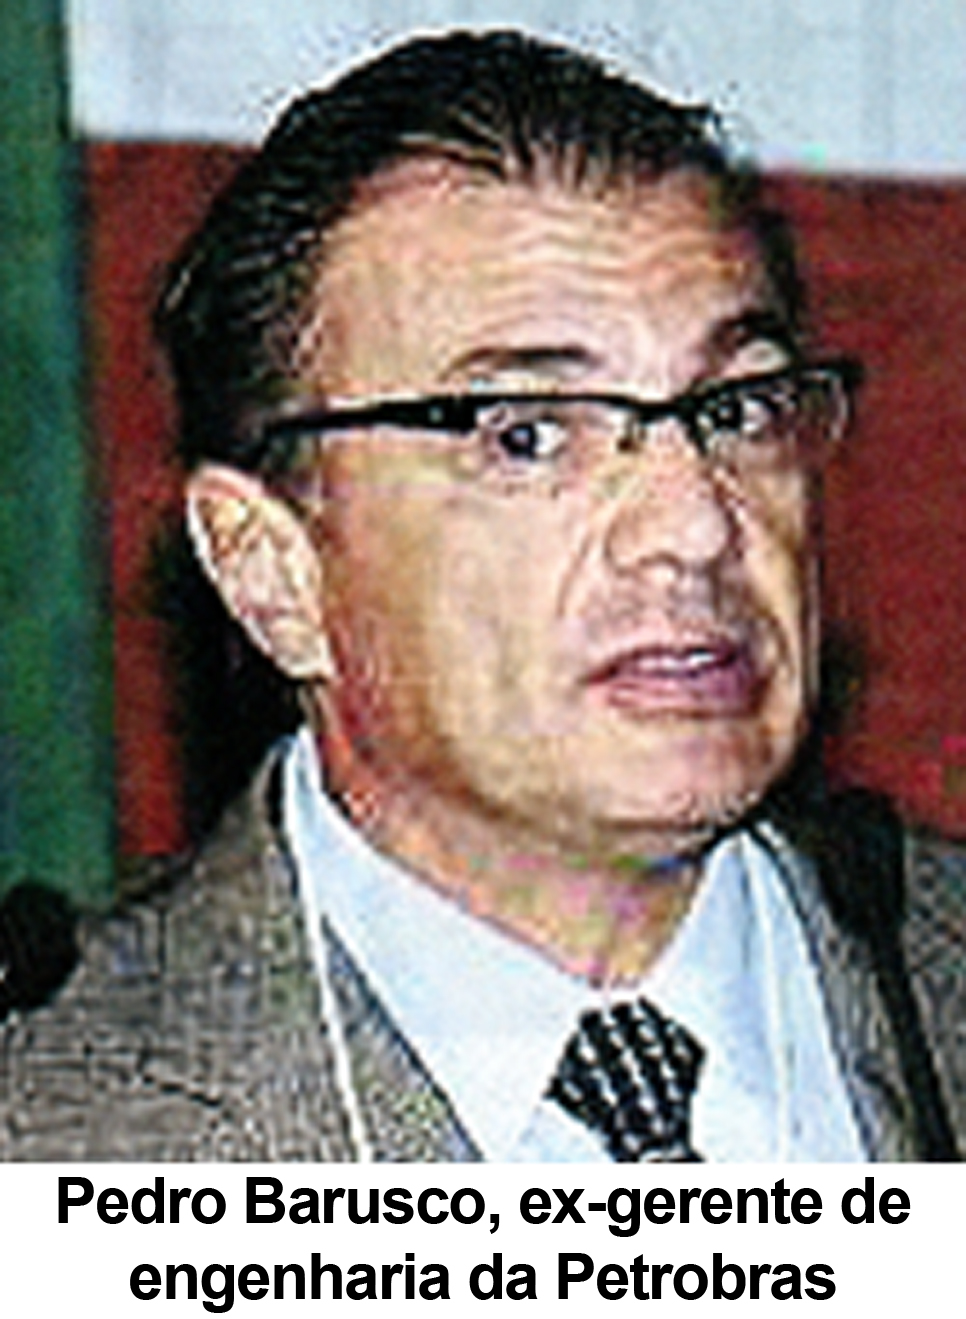 FSP 18/11/14 - Pedro Barusco, ex-gerente de engenharia da Petrobras